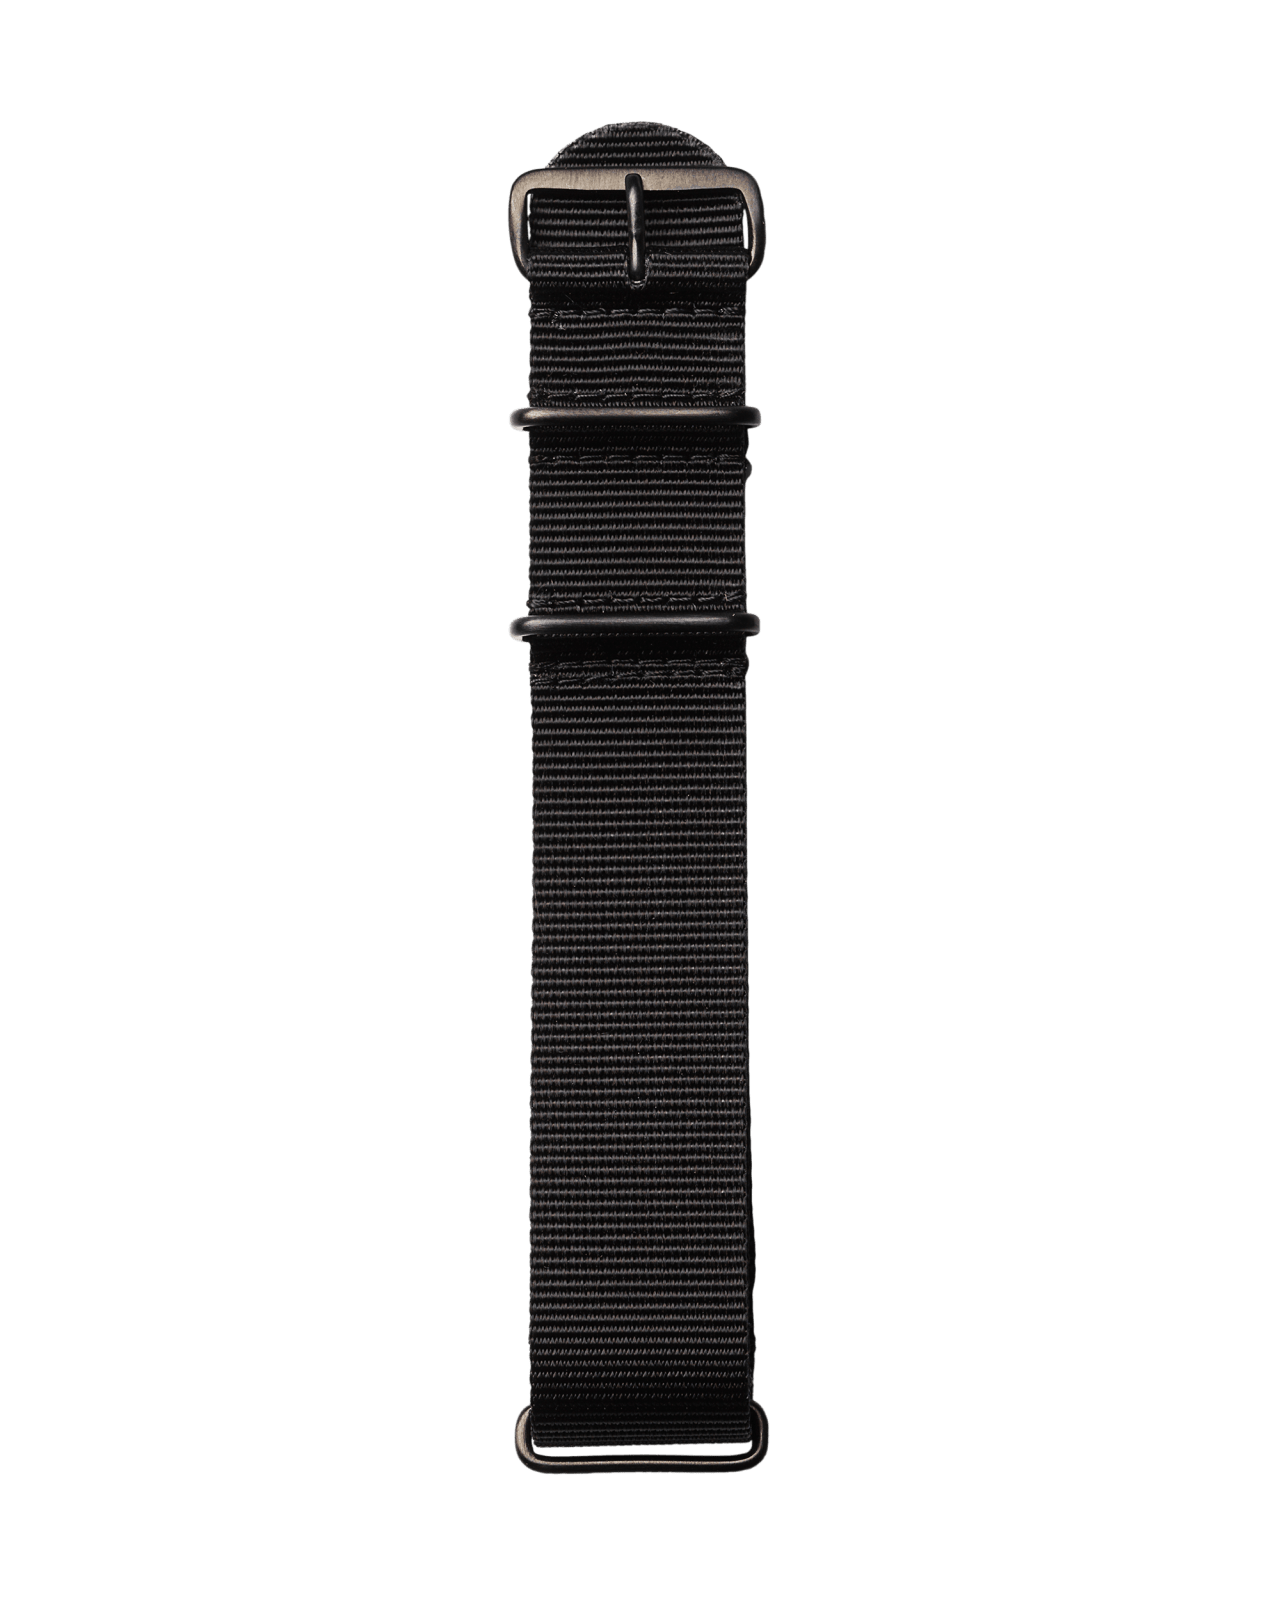 Textil Uhren Armband in schwarzer Farbe